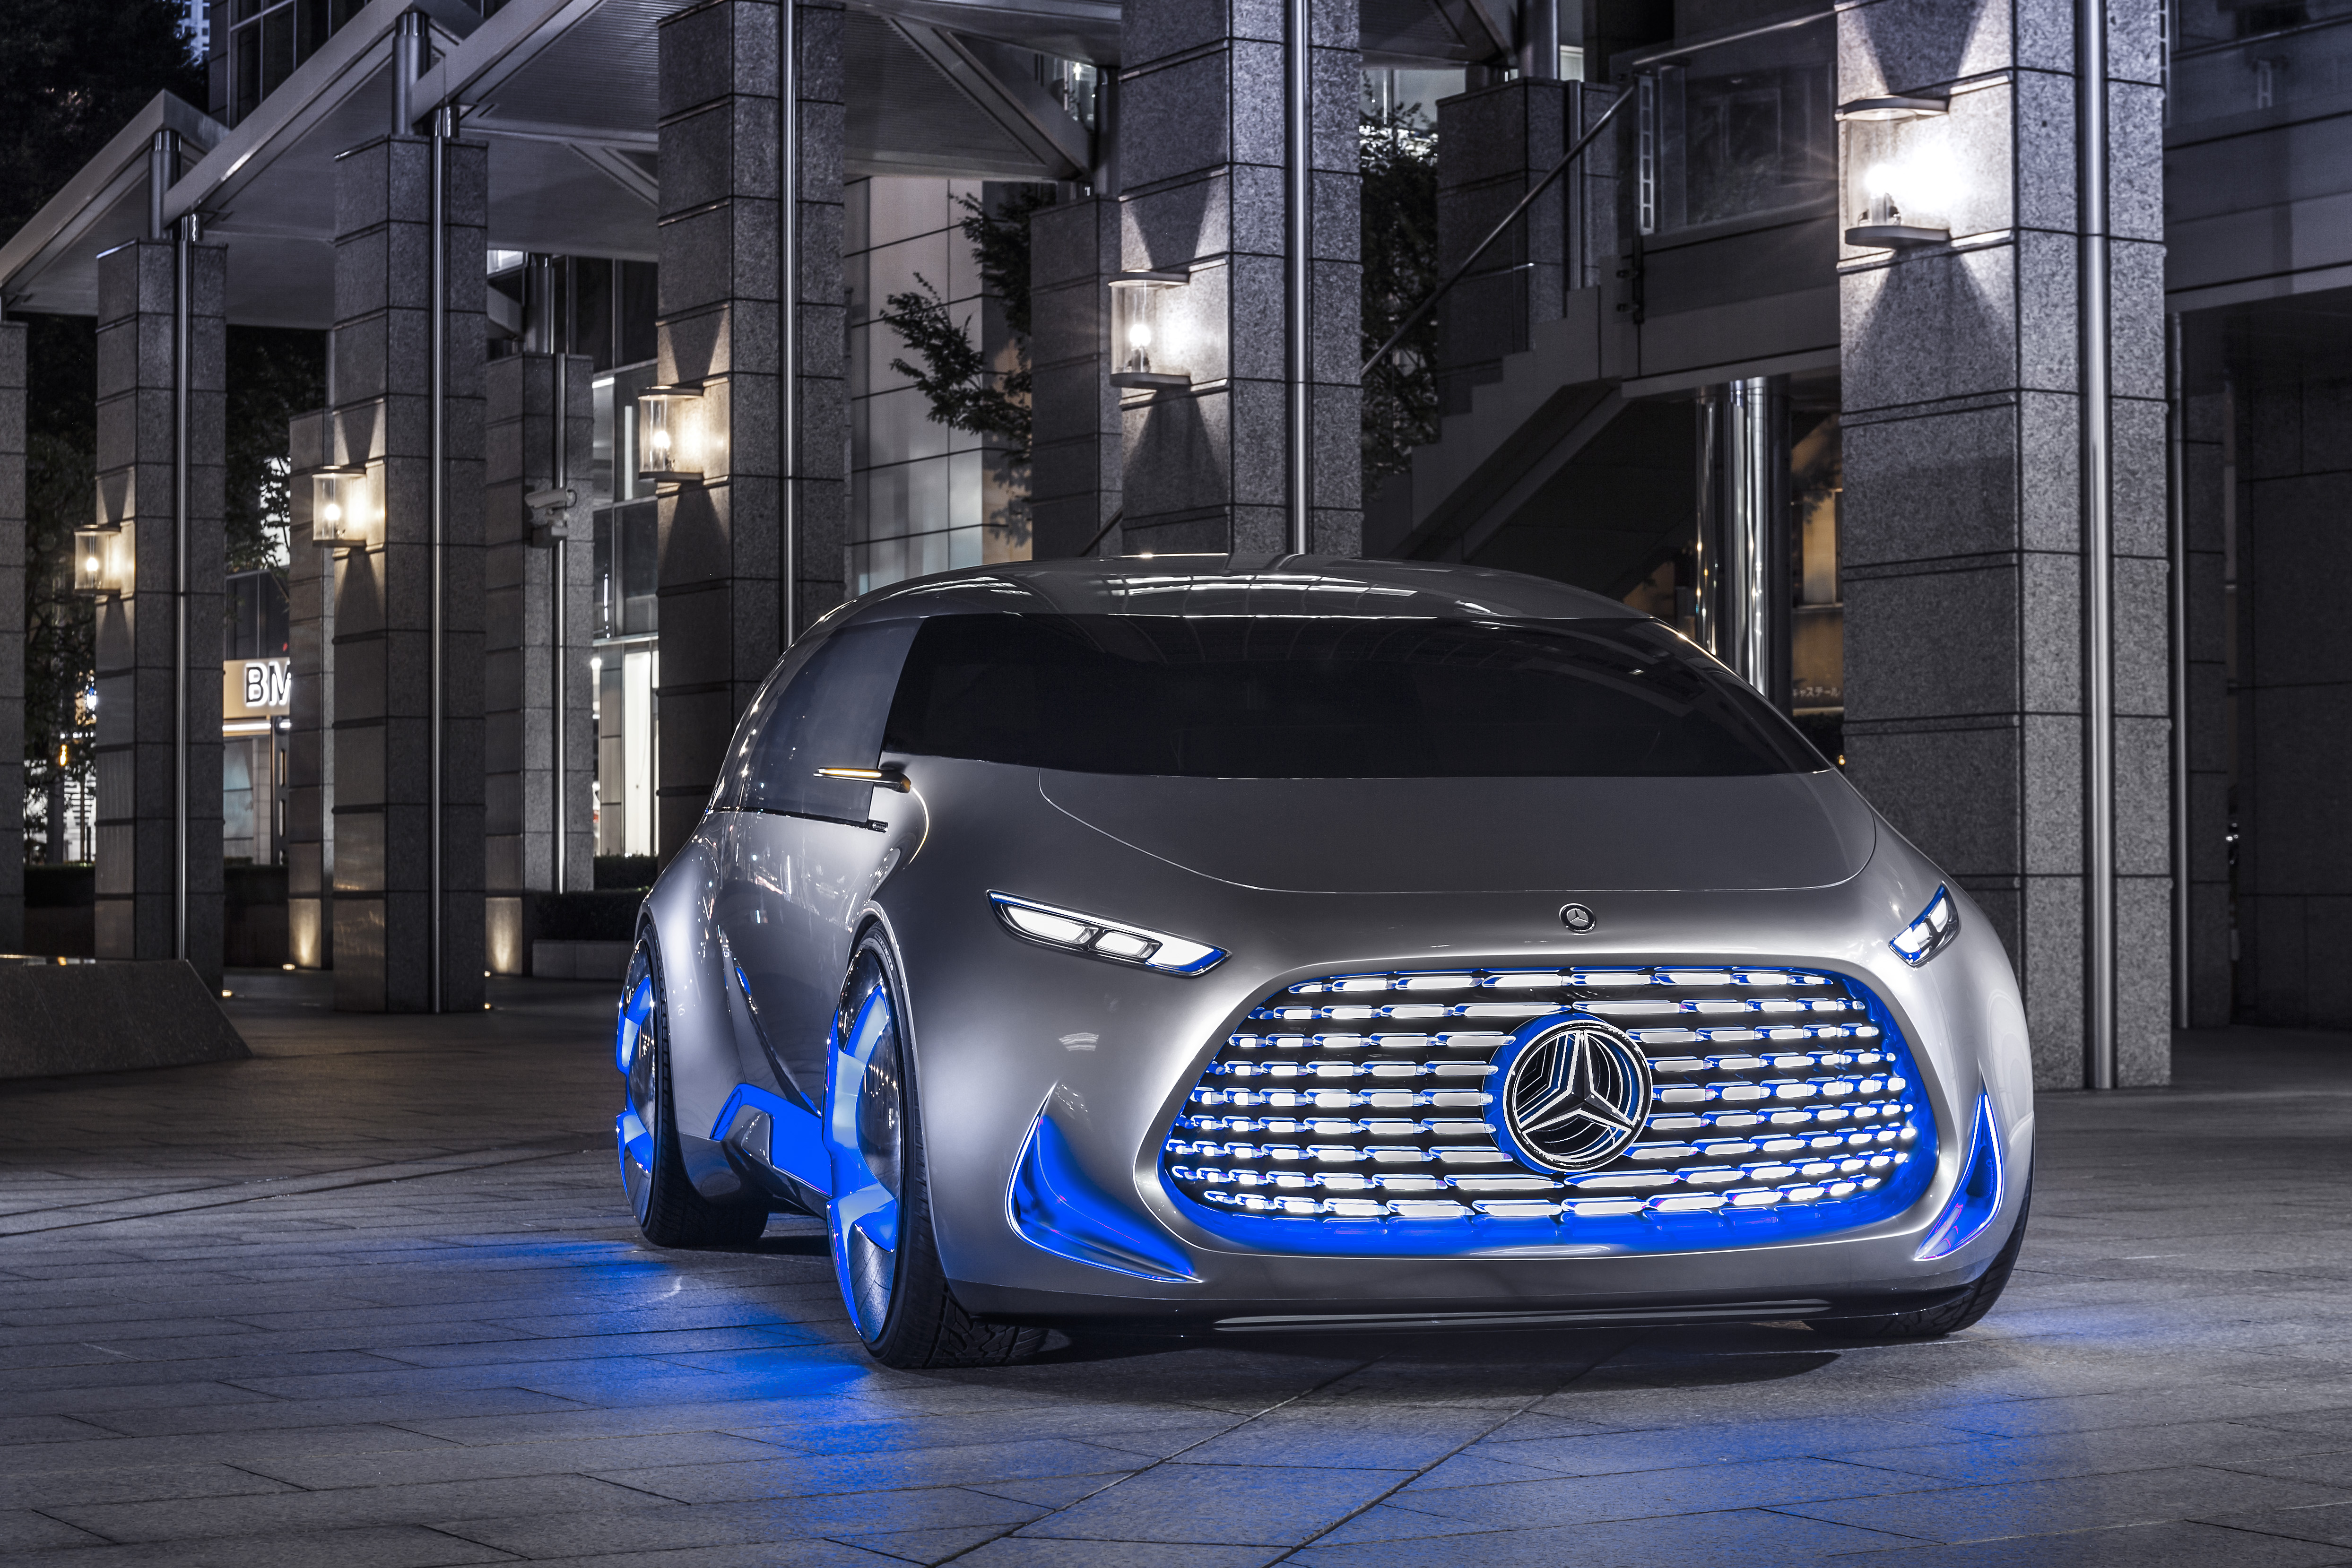 Самого нового мерседеса. Mercedes-Benz Vision Tokyo Concept 2015. Шевроле FNR концепт 2020. Мерседес Benz Vision. Концепт кар Мерседес.